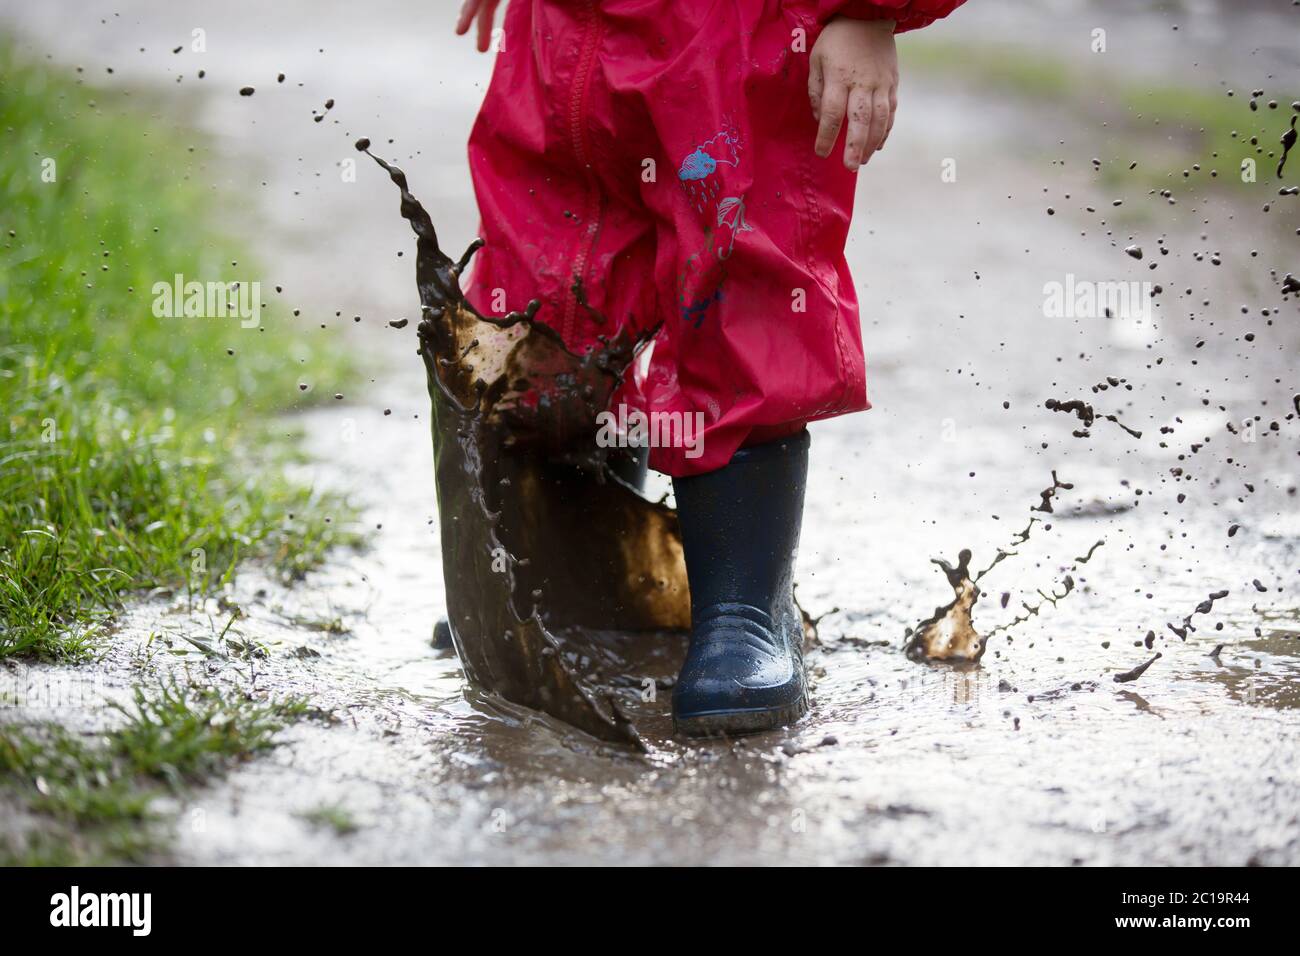 Süßer kleiner Kleinkind Junge, blondes Kind in rotem Regenmantel und blauen Stiefeln, im Regen in schlammigen Pfützen spielen, springen und lachen Stockfoto